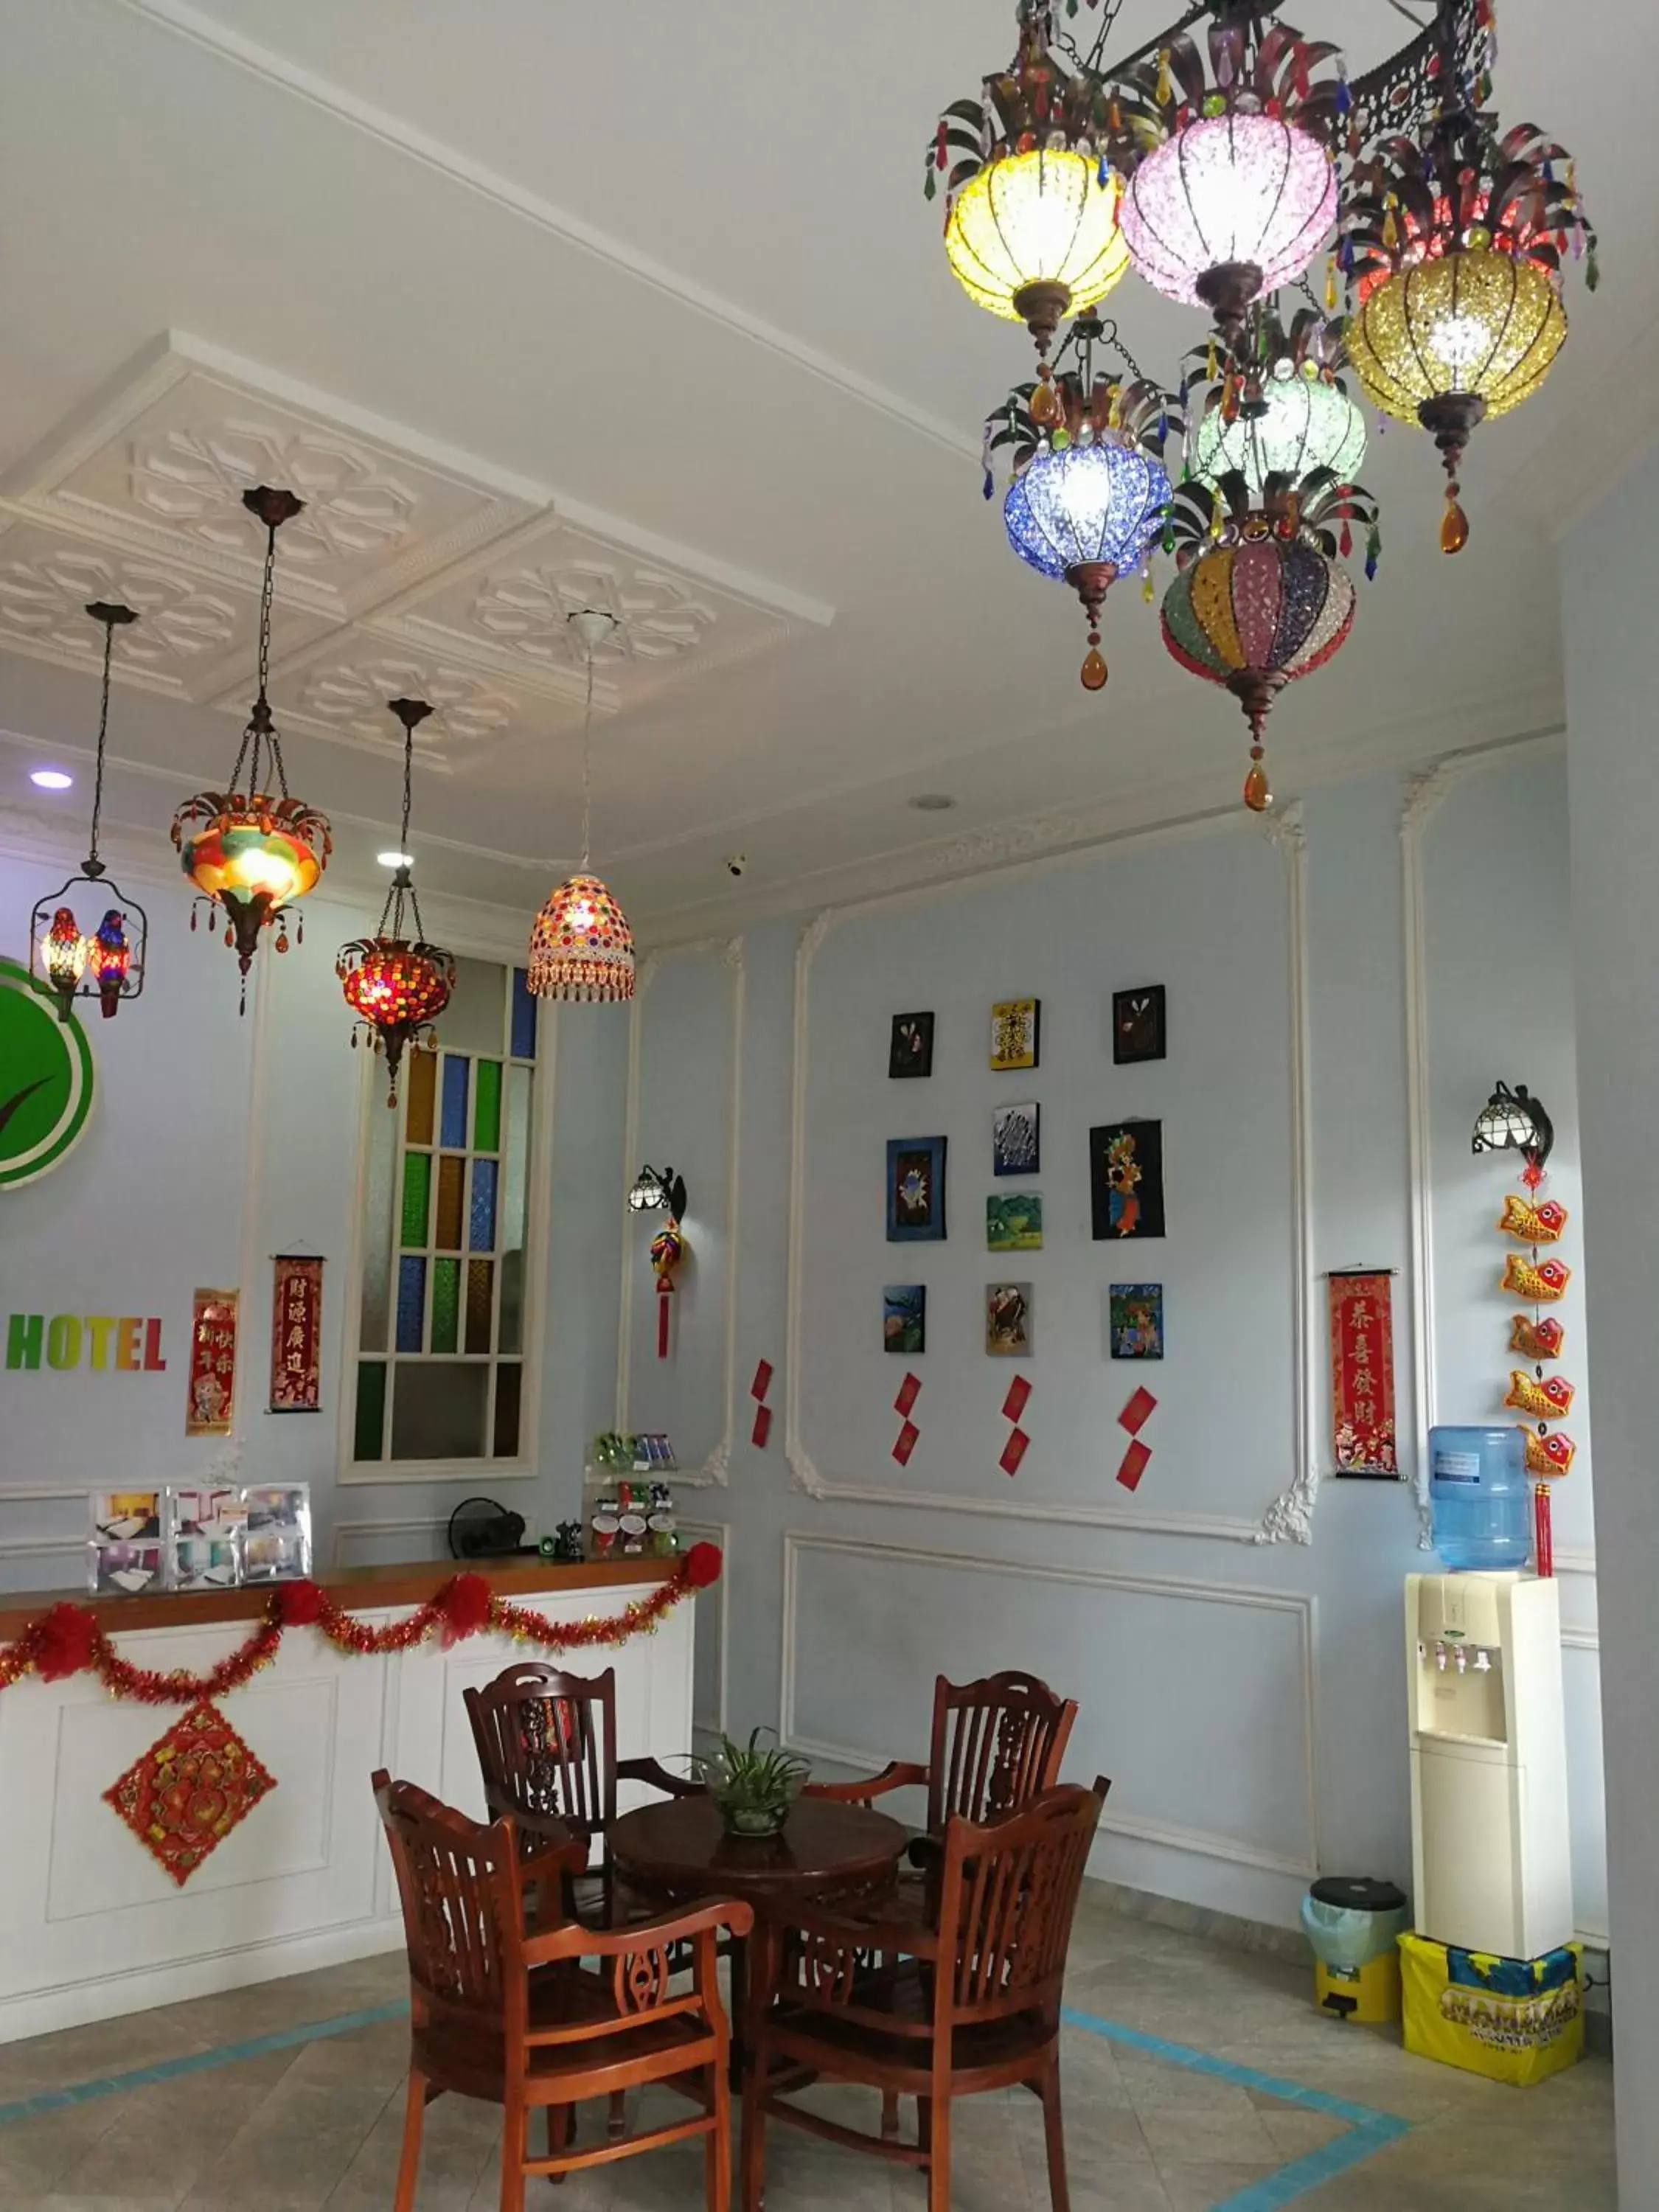 Lobby or reception, Restaurant/Places to Eat in Angsana Hotel Melaka